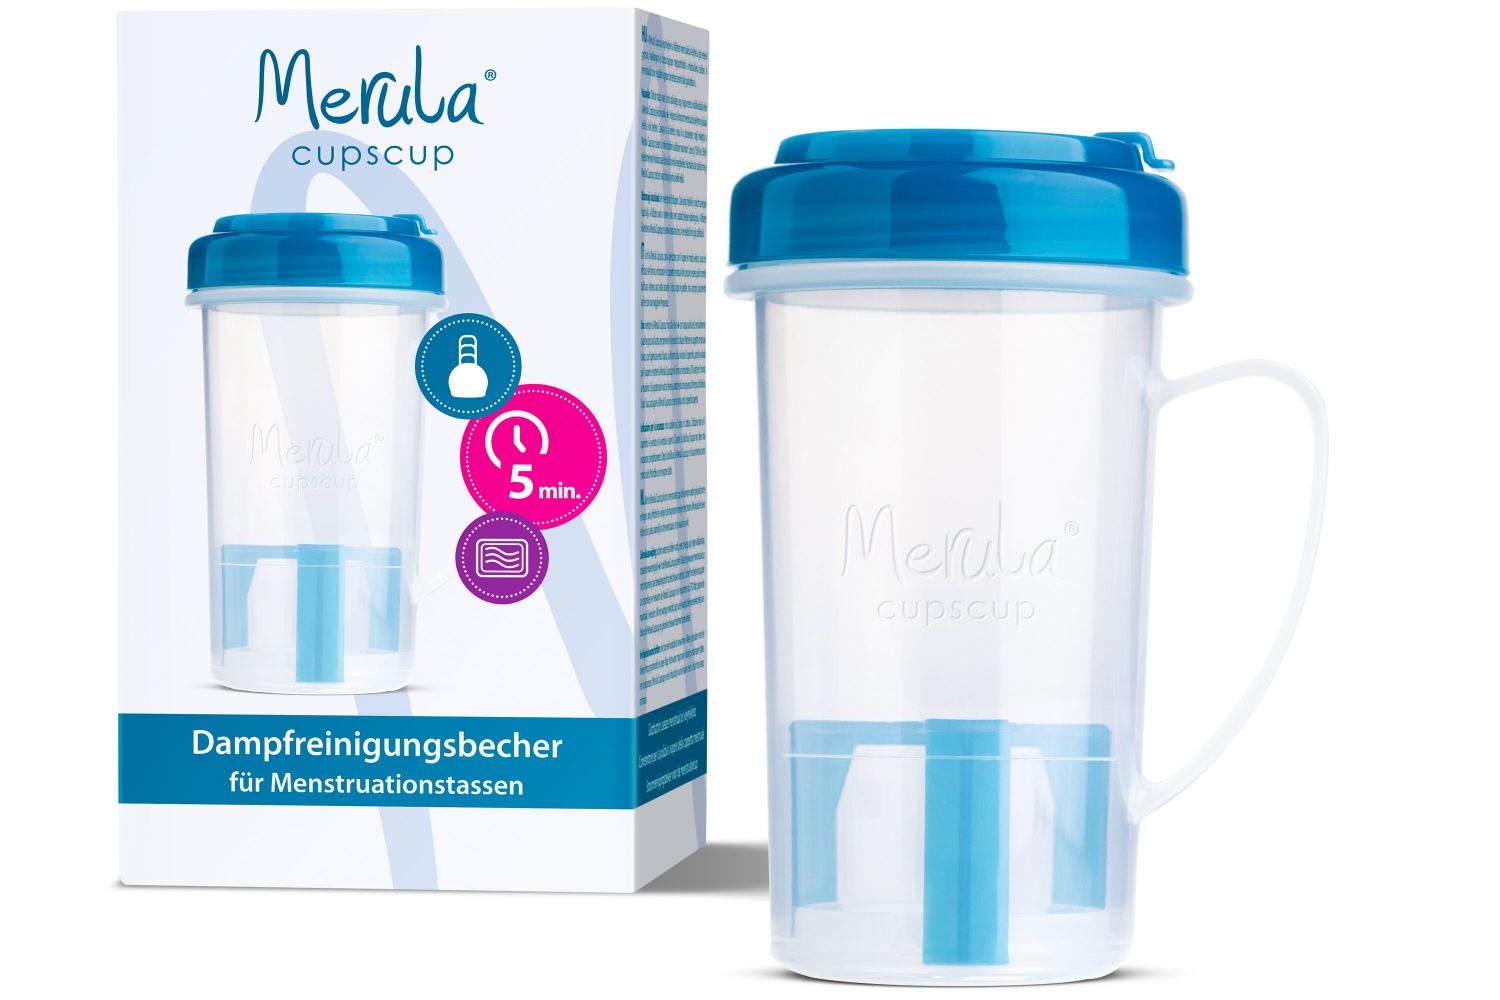 Merula Cupscup Dampfreinigungsbecher für Menstruationstassen